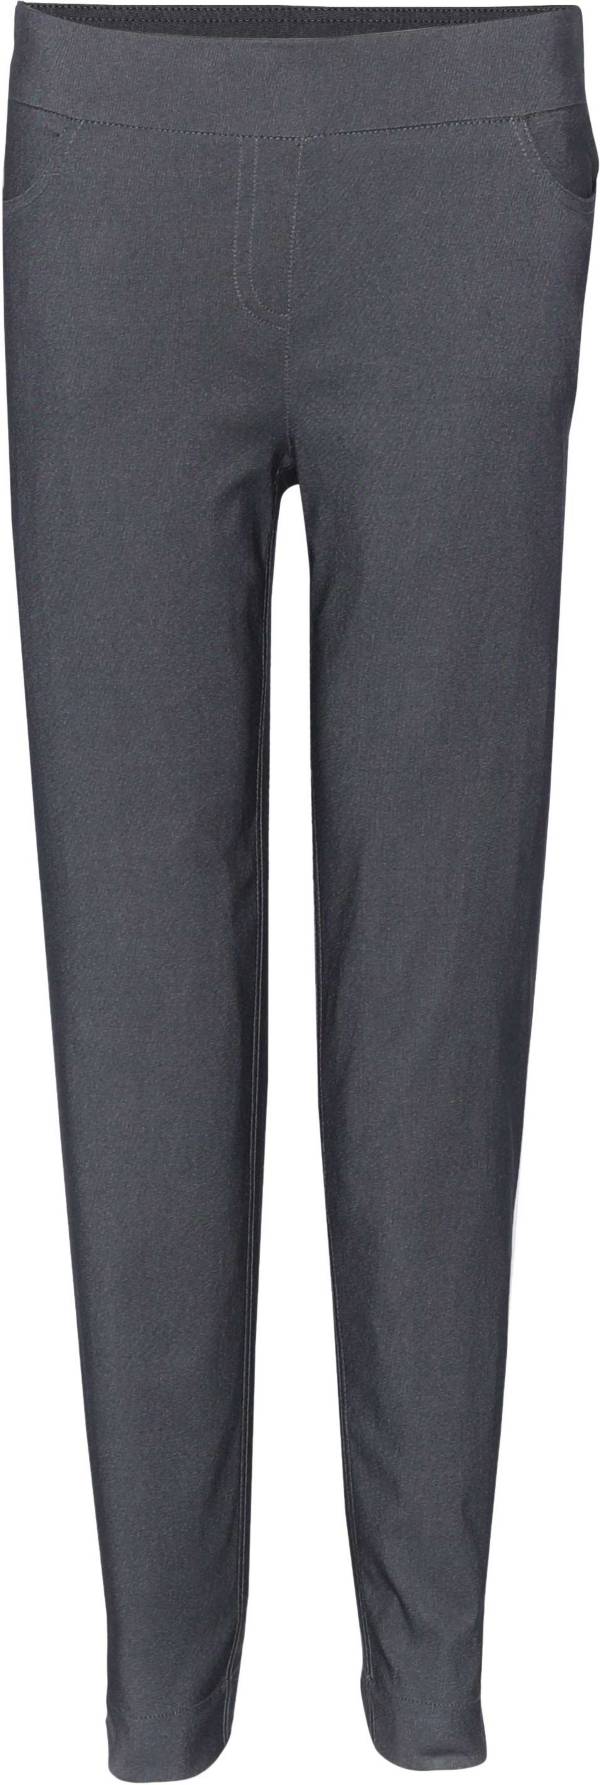 Bette & Court Women's Slim-Sation Golf Pants product image